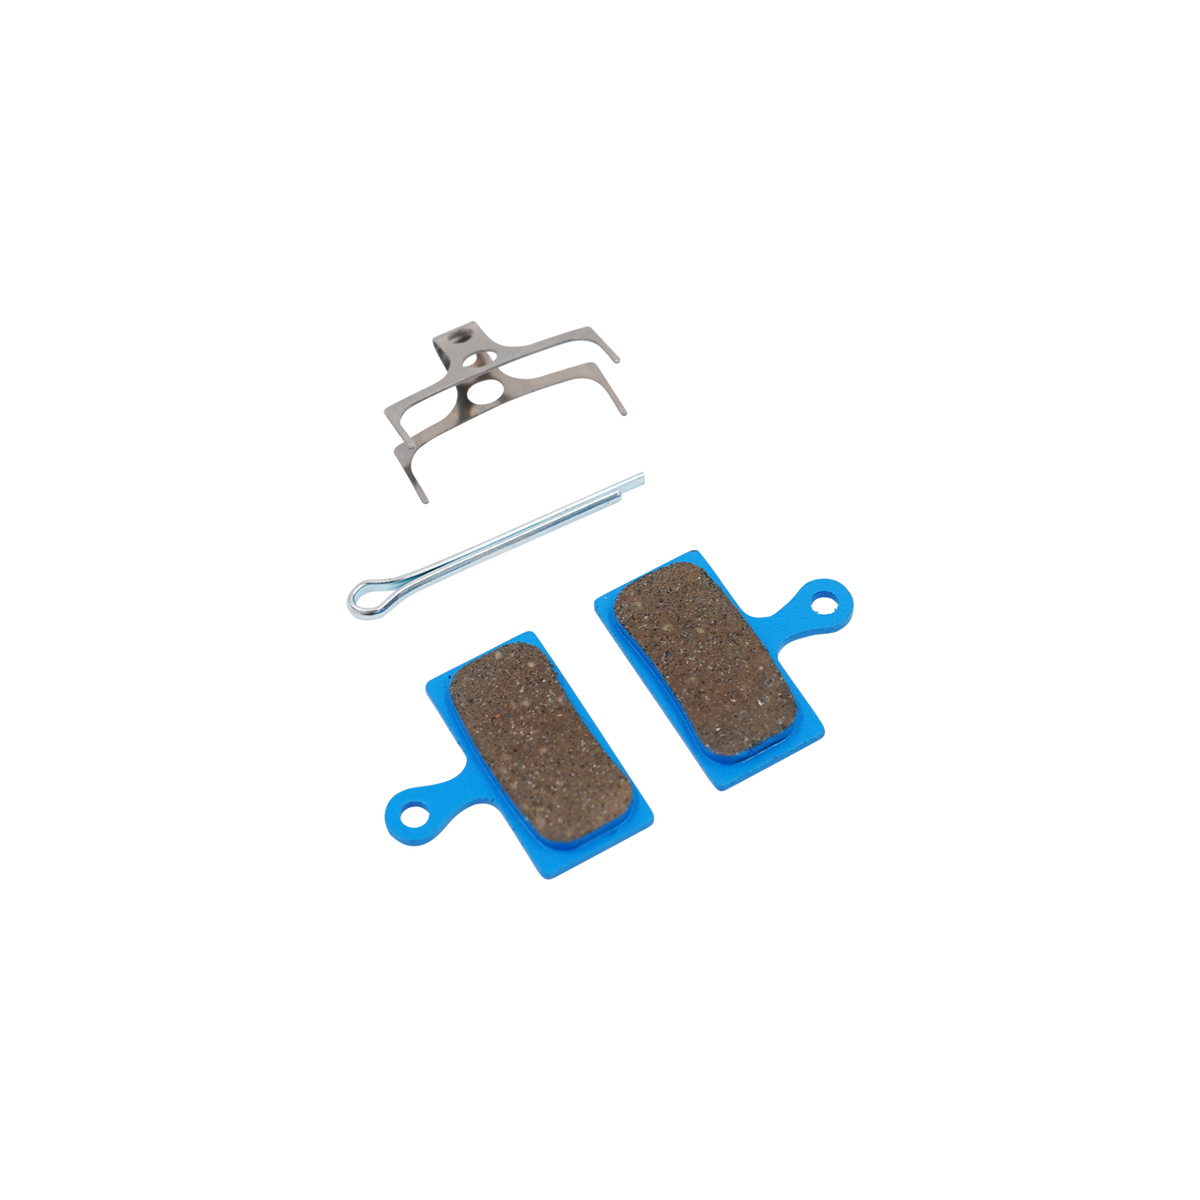 Produktbild von Bremsbelaegen kompatibel mit Shimano Top